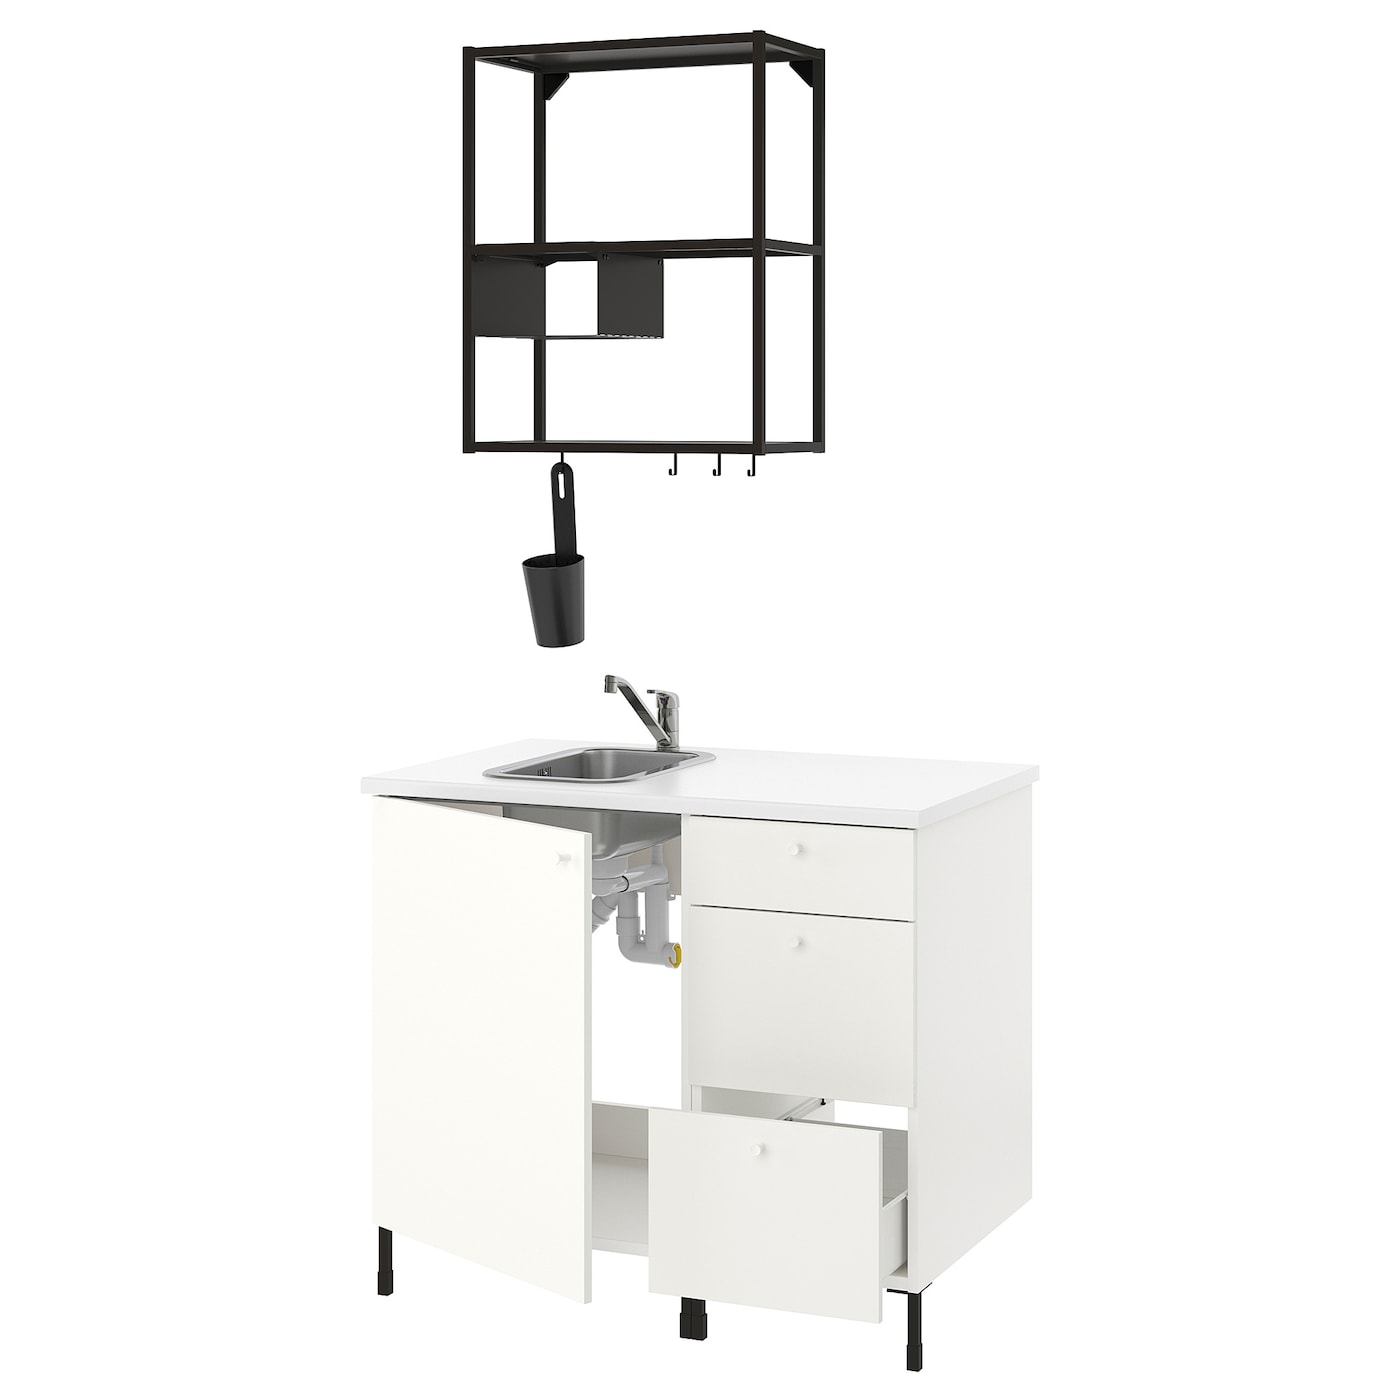 Комбинация шкафов для прачечной и кухни - ENHET  IKEA/ ЭНХЕТ ИКЕА, 103x63,5x222 см, белый/черный